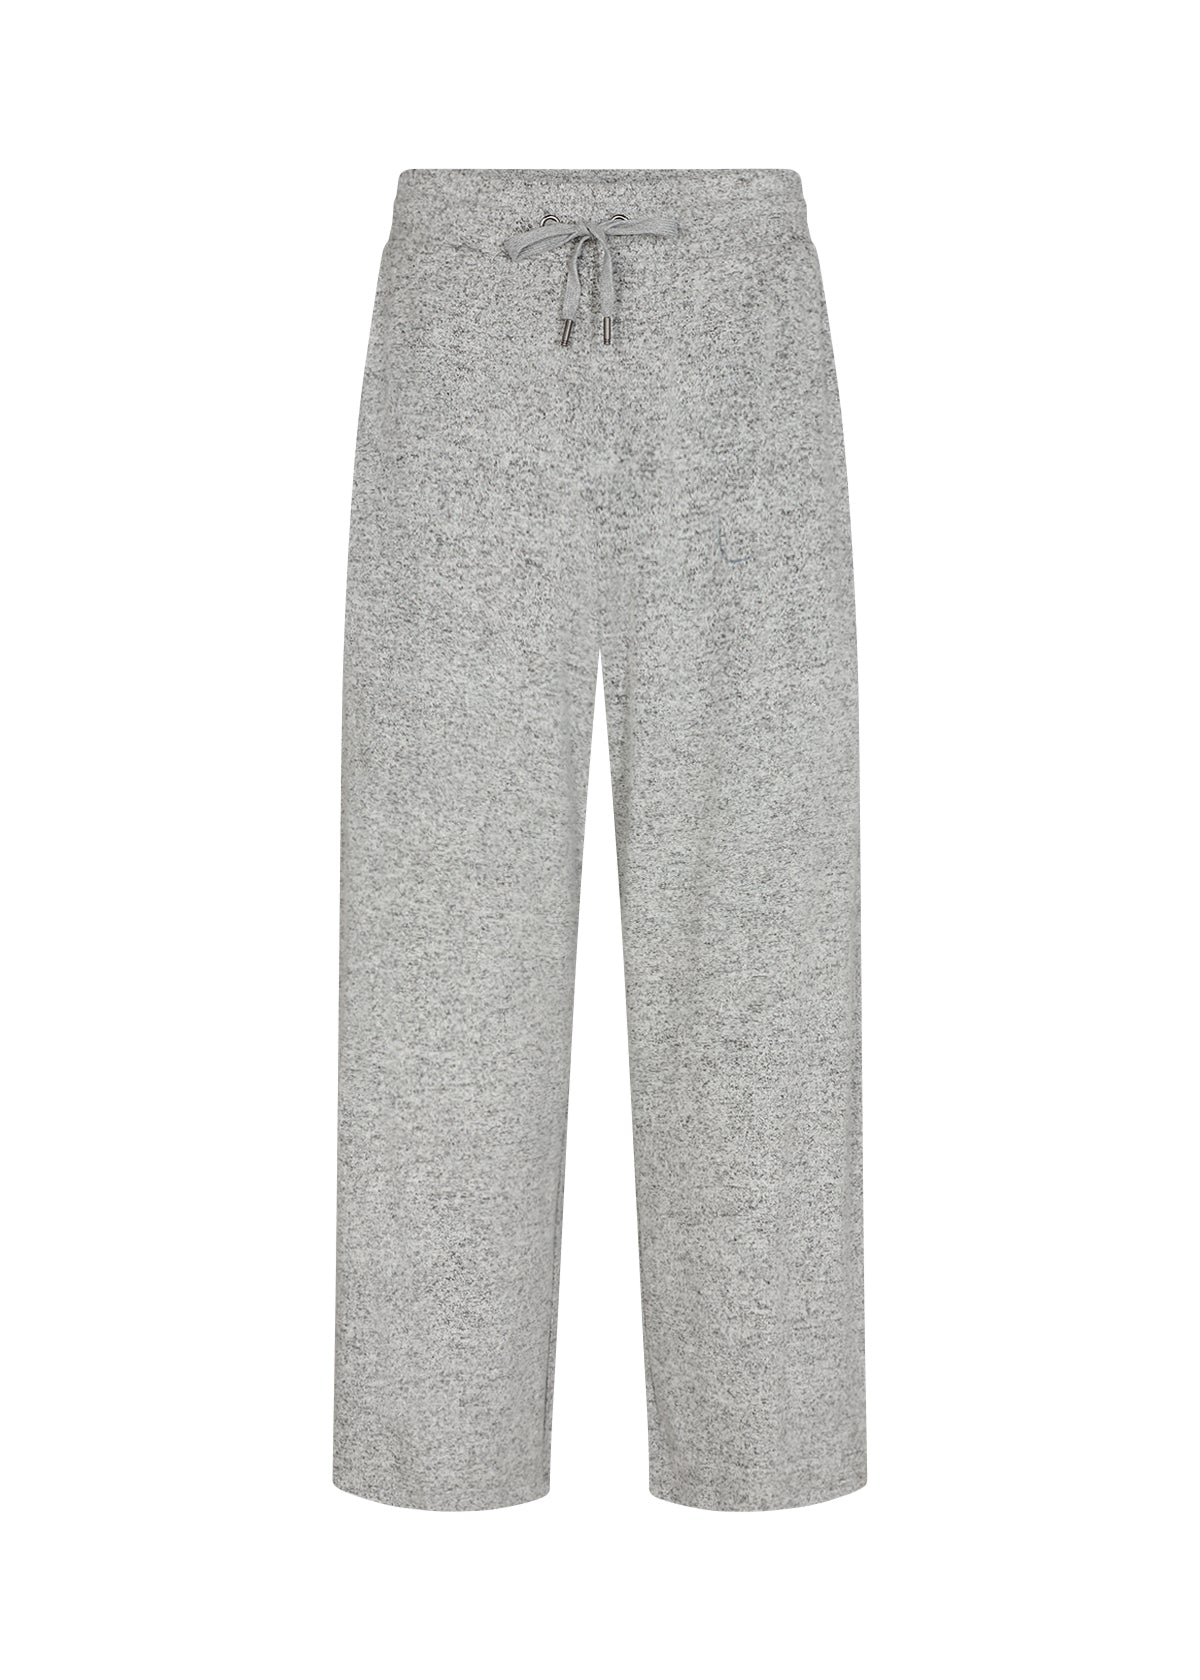 SOYA CONCEPT Biara 74 Grey Melange Soft Pants